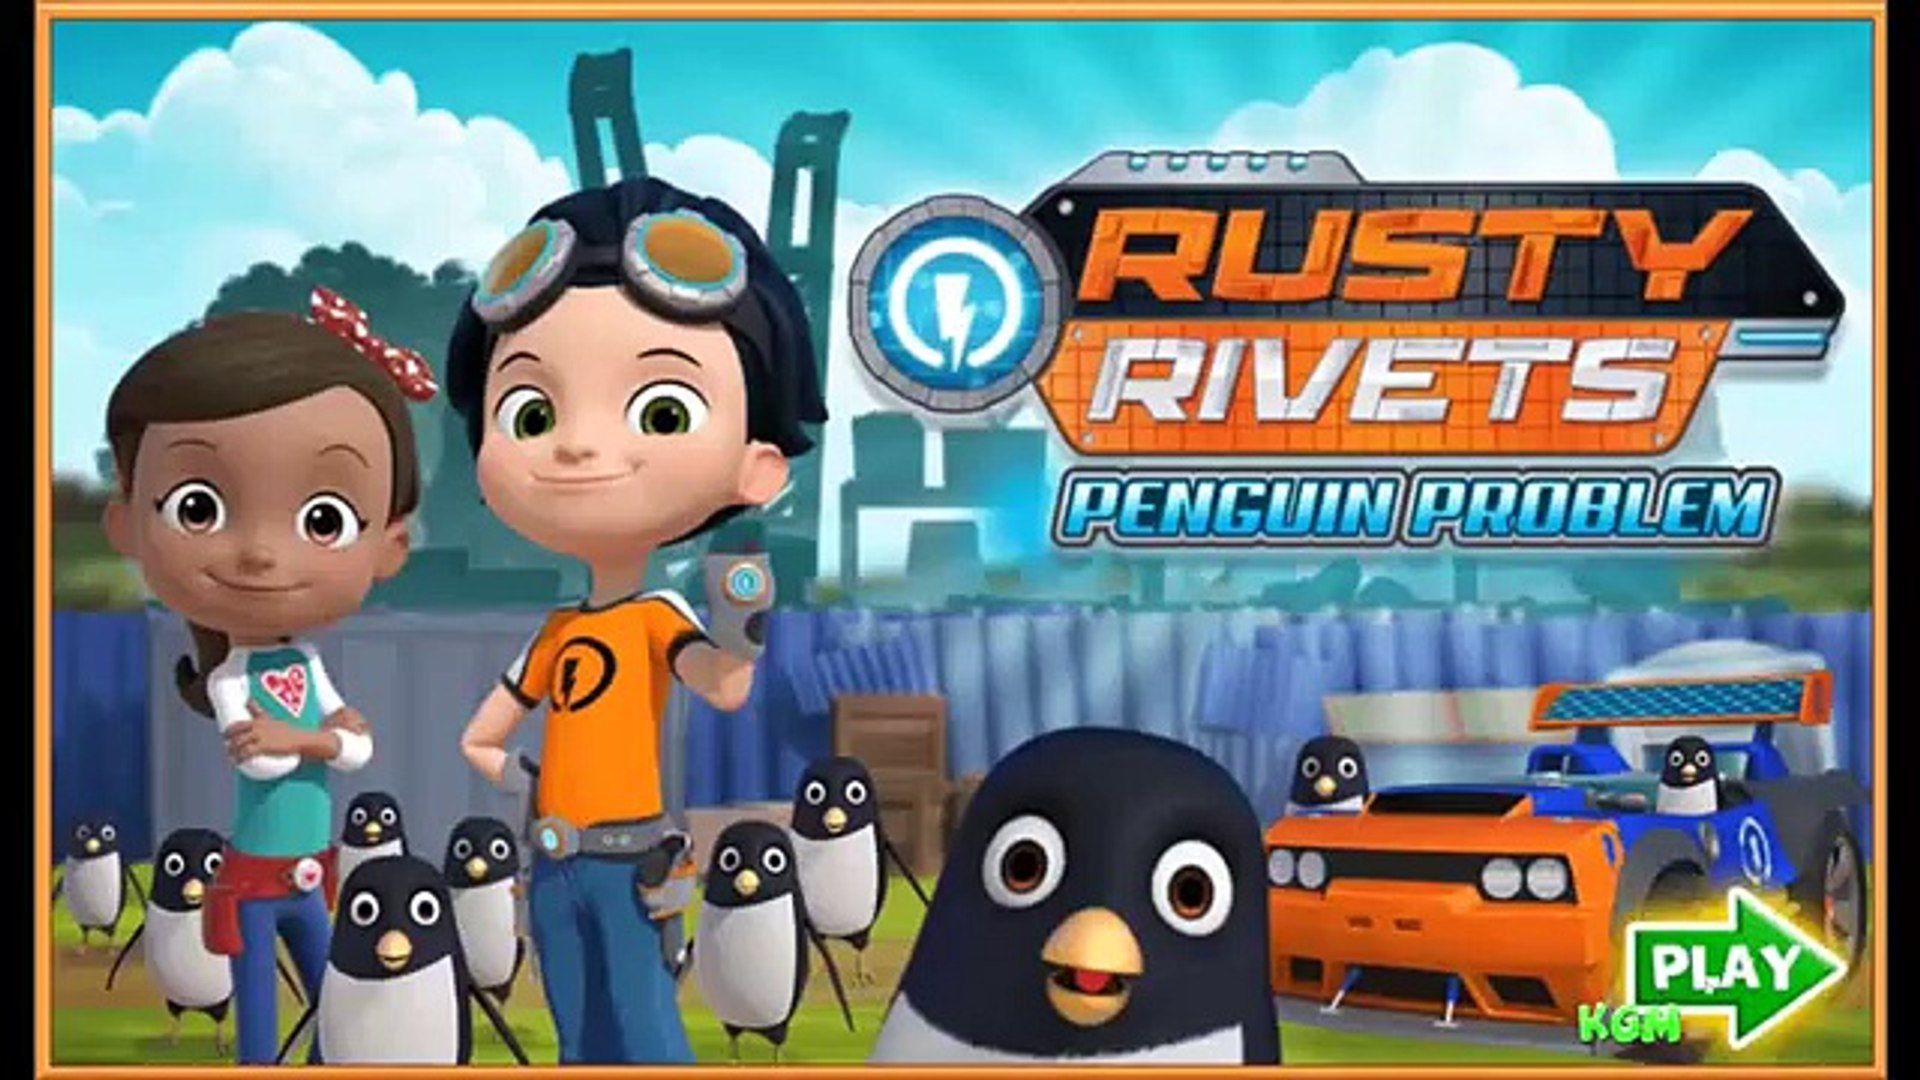 Rusty Rivets Penguin Problem RIVETS Nick jr Game For Kids